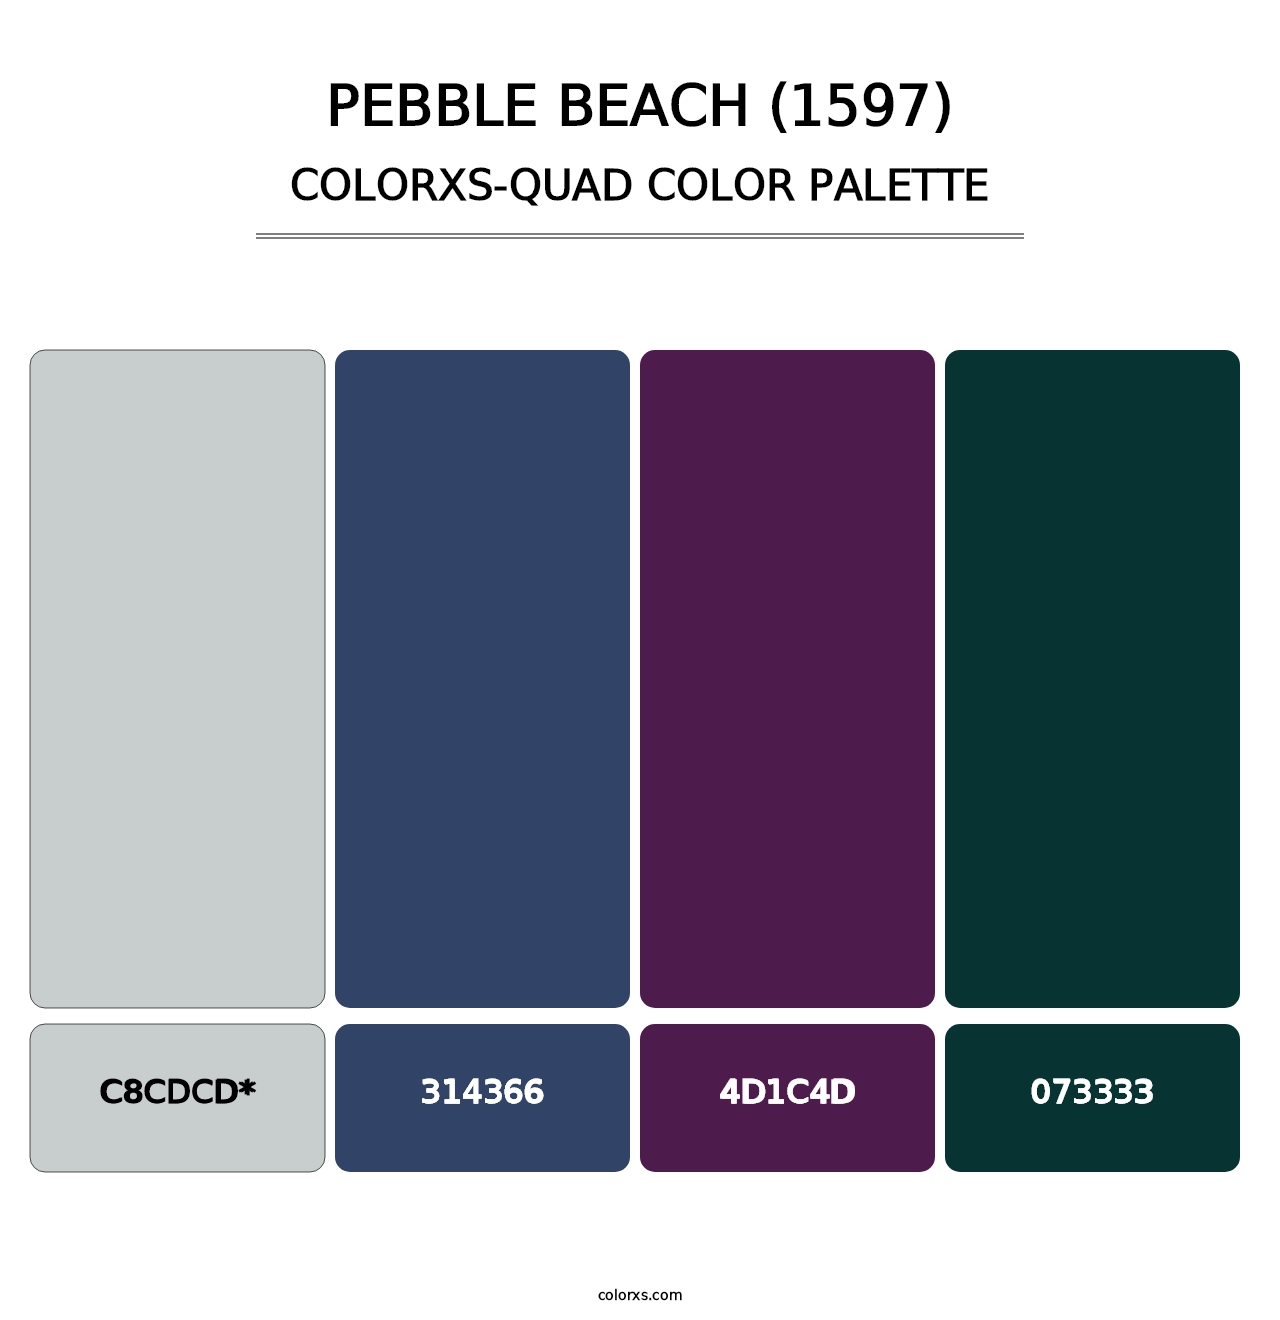 Pebble Beach (1597) - Colorxs Quad Palette